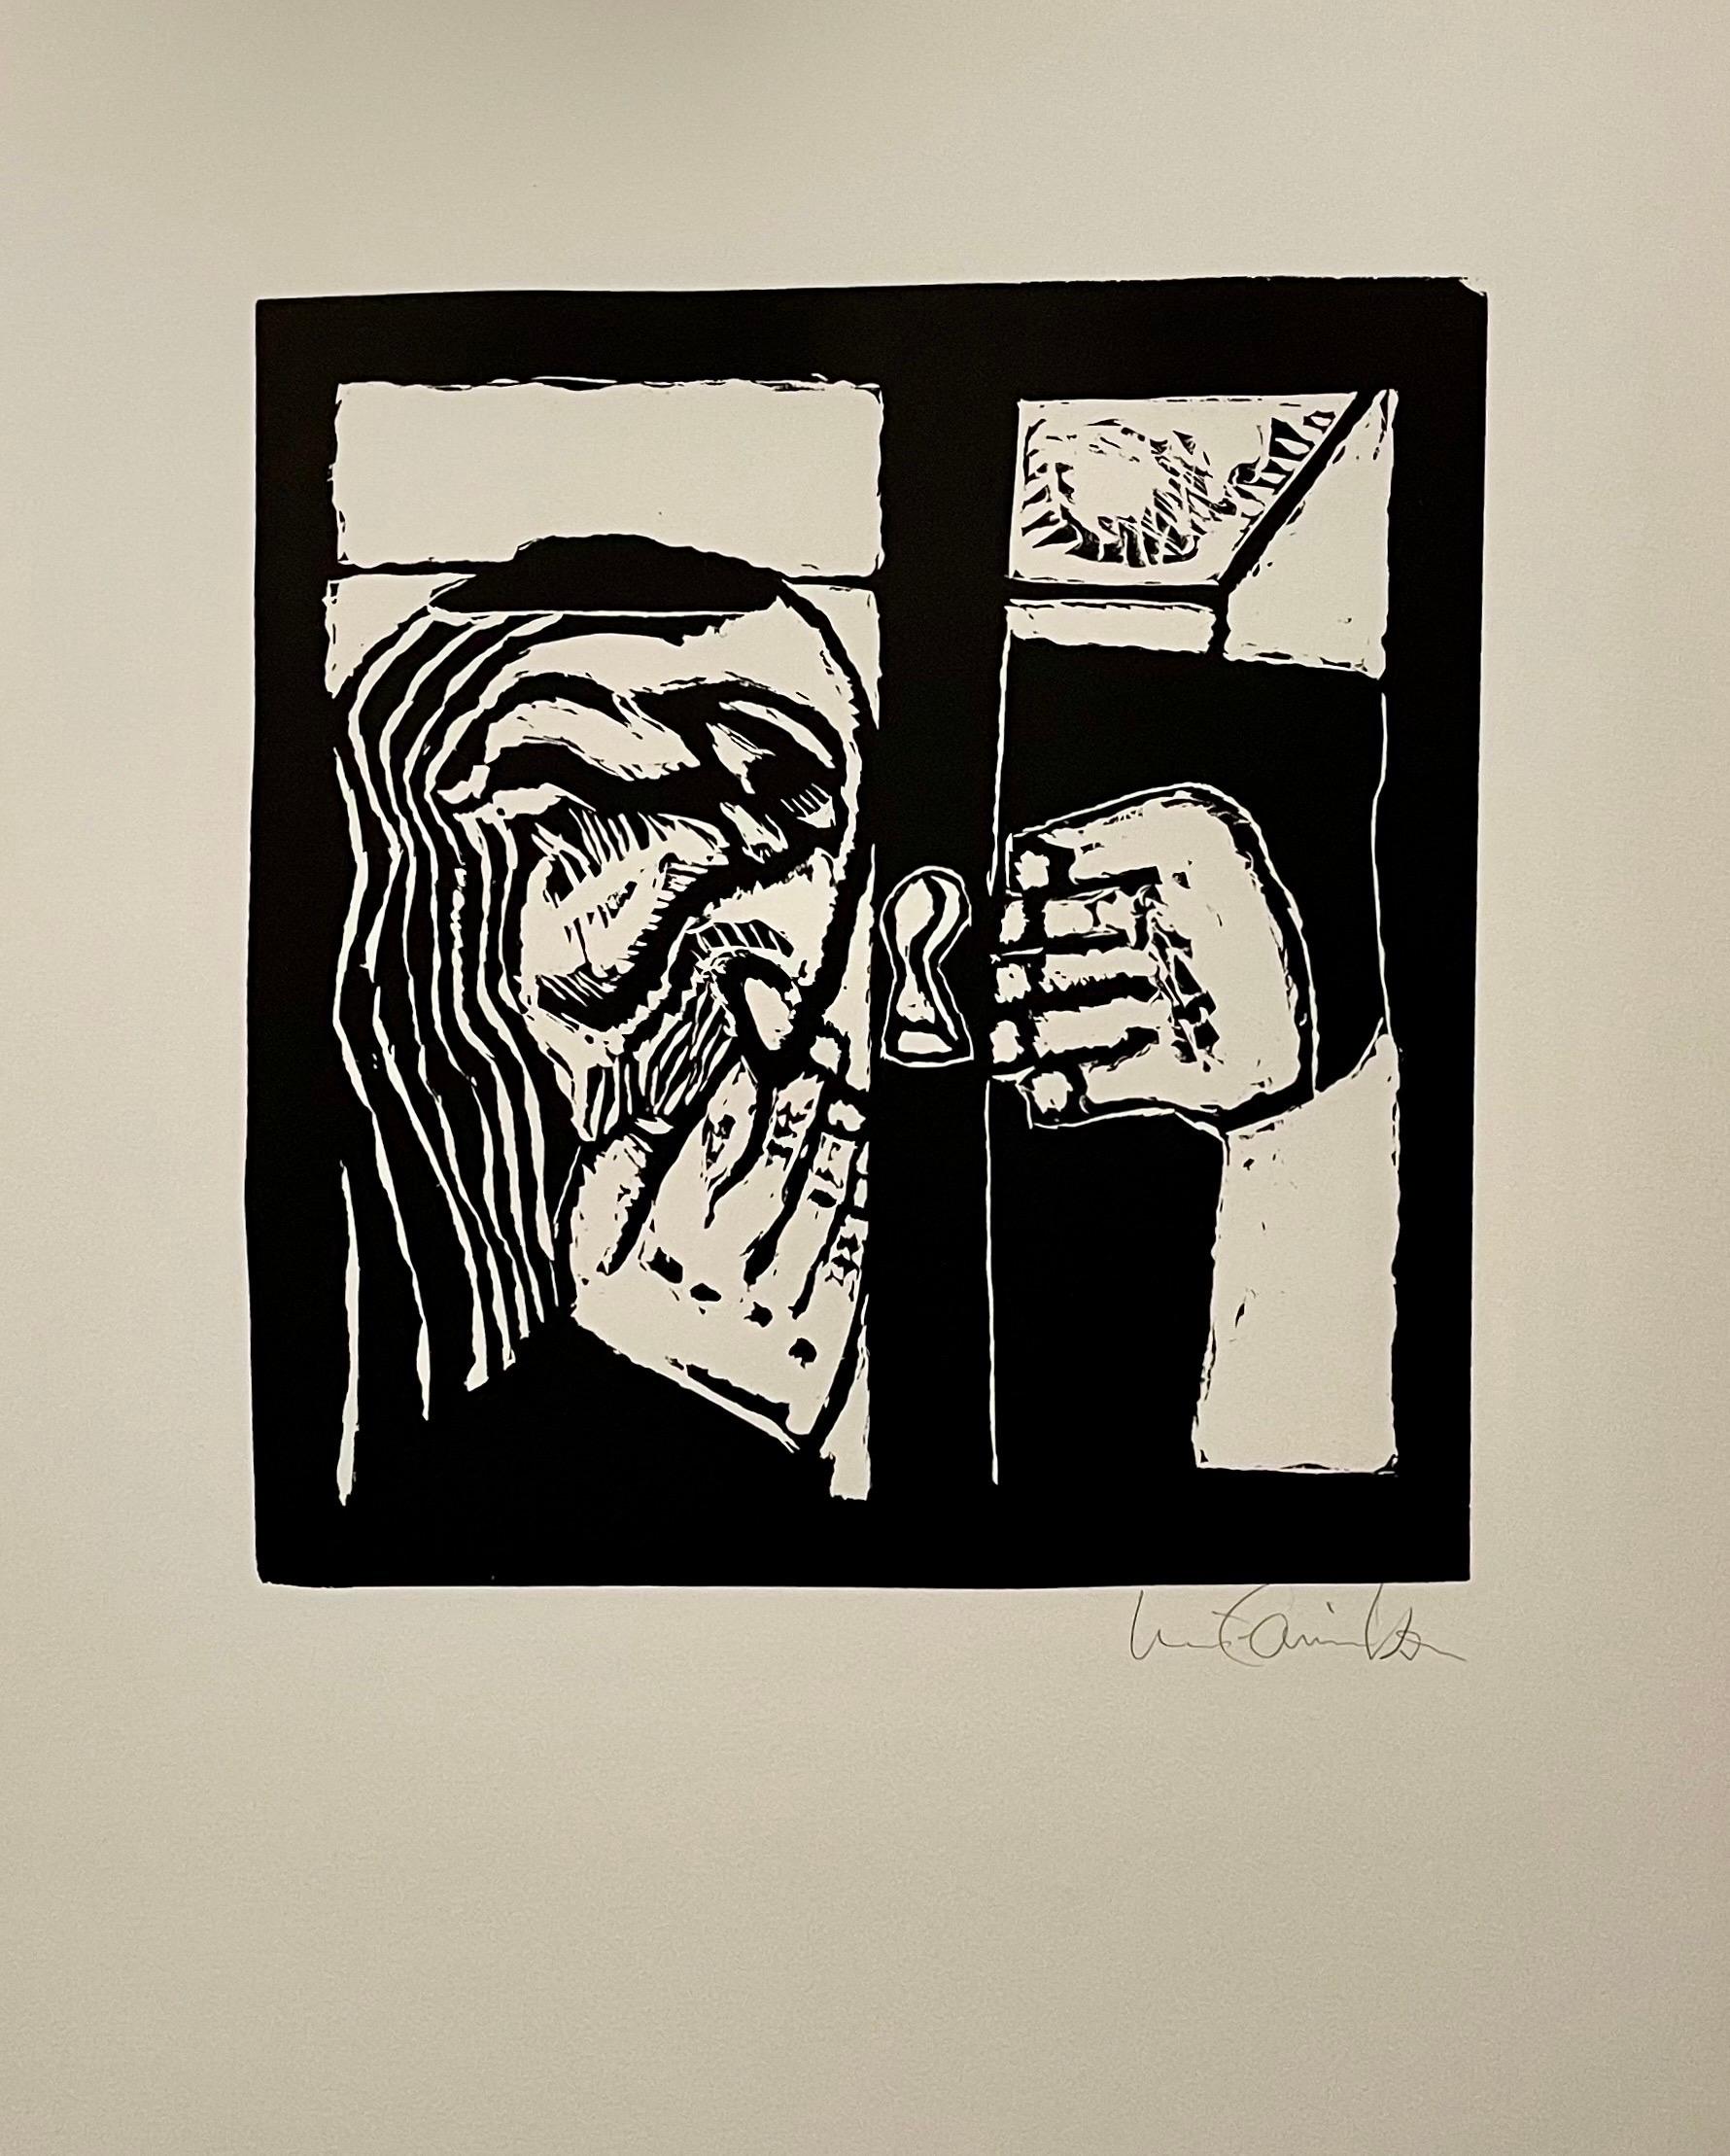 Luis Camnitzer und Martin Buber (1878-1965), 
New York: JMB Publishers Ltd, 1970.
Gedruckt bei The New York Graphic Workshop. 
Handsigniert auf Arches-Papier. (Auflage 24/100, nummeriert auf der Begründungsseite)

Farbholzschnitte nach Volksmärchen